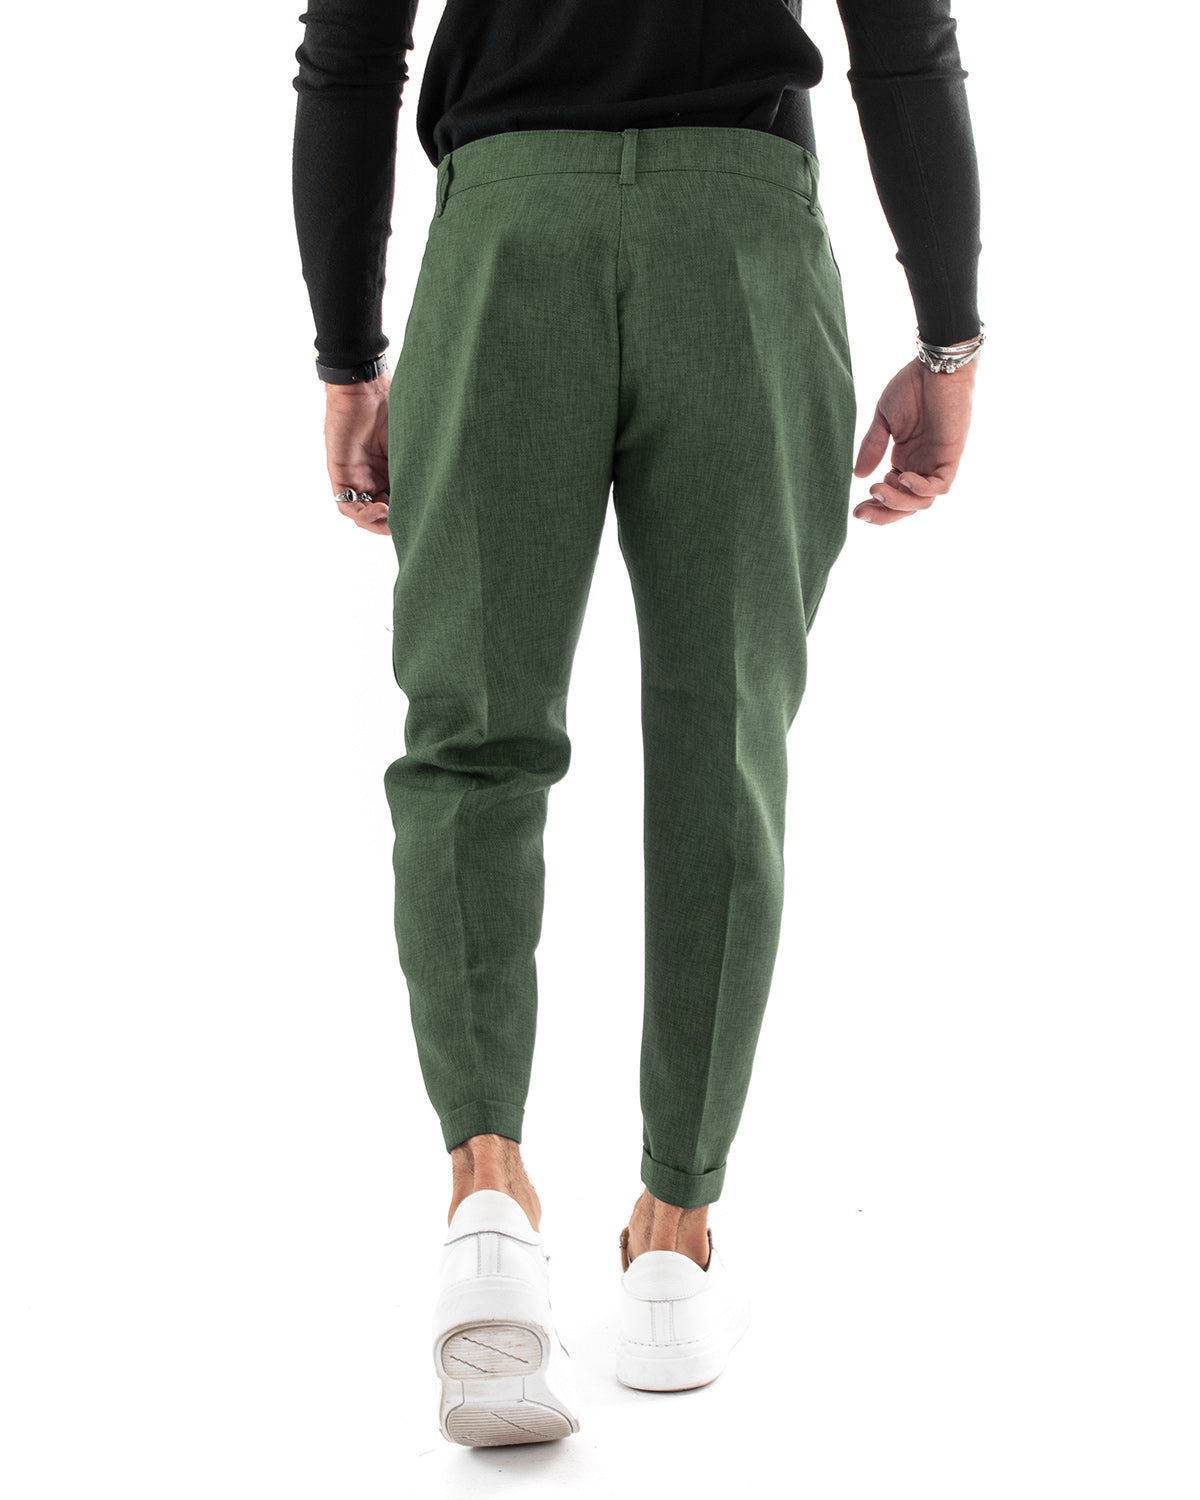 Pantaloni Uomo Tasca America Classico Verde Melangiato Abbottonatura Allungata Casual GIOSAL-P6051A